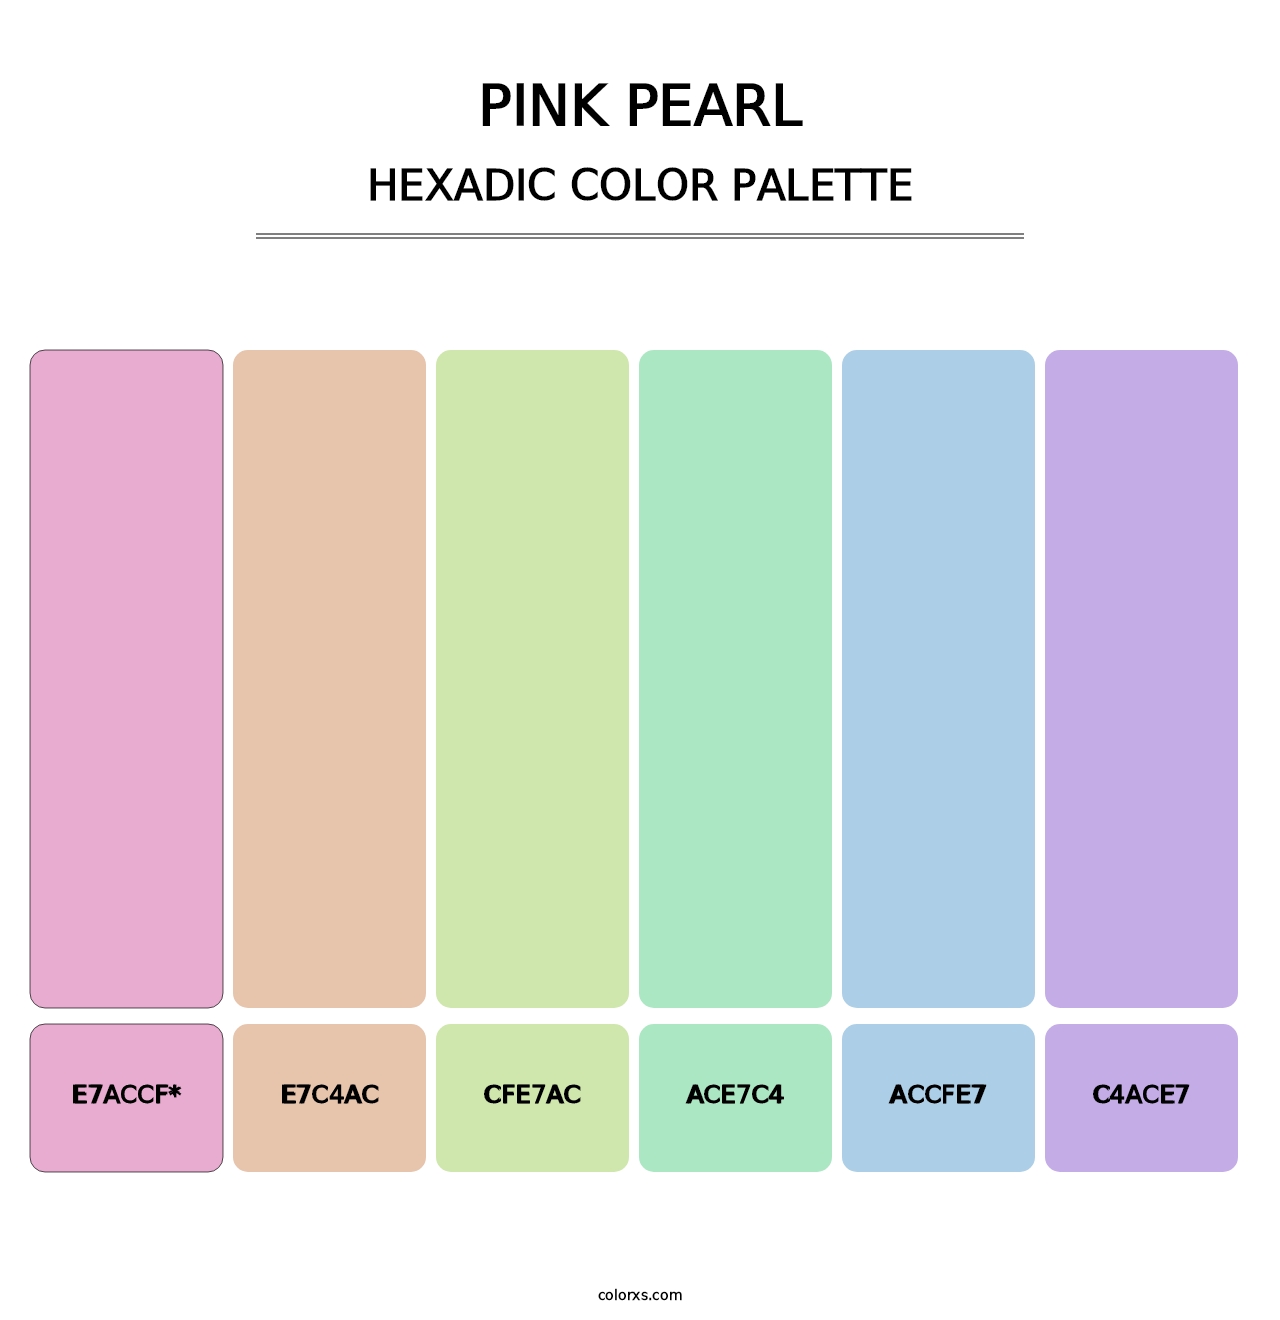 Pink Pearl - Hexadic Color Palette